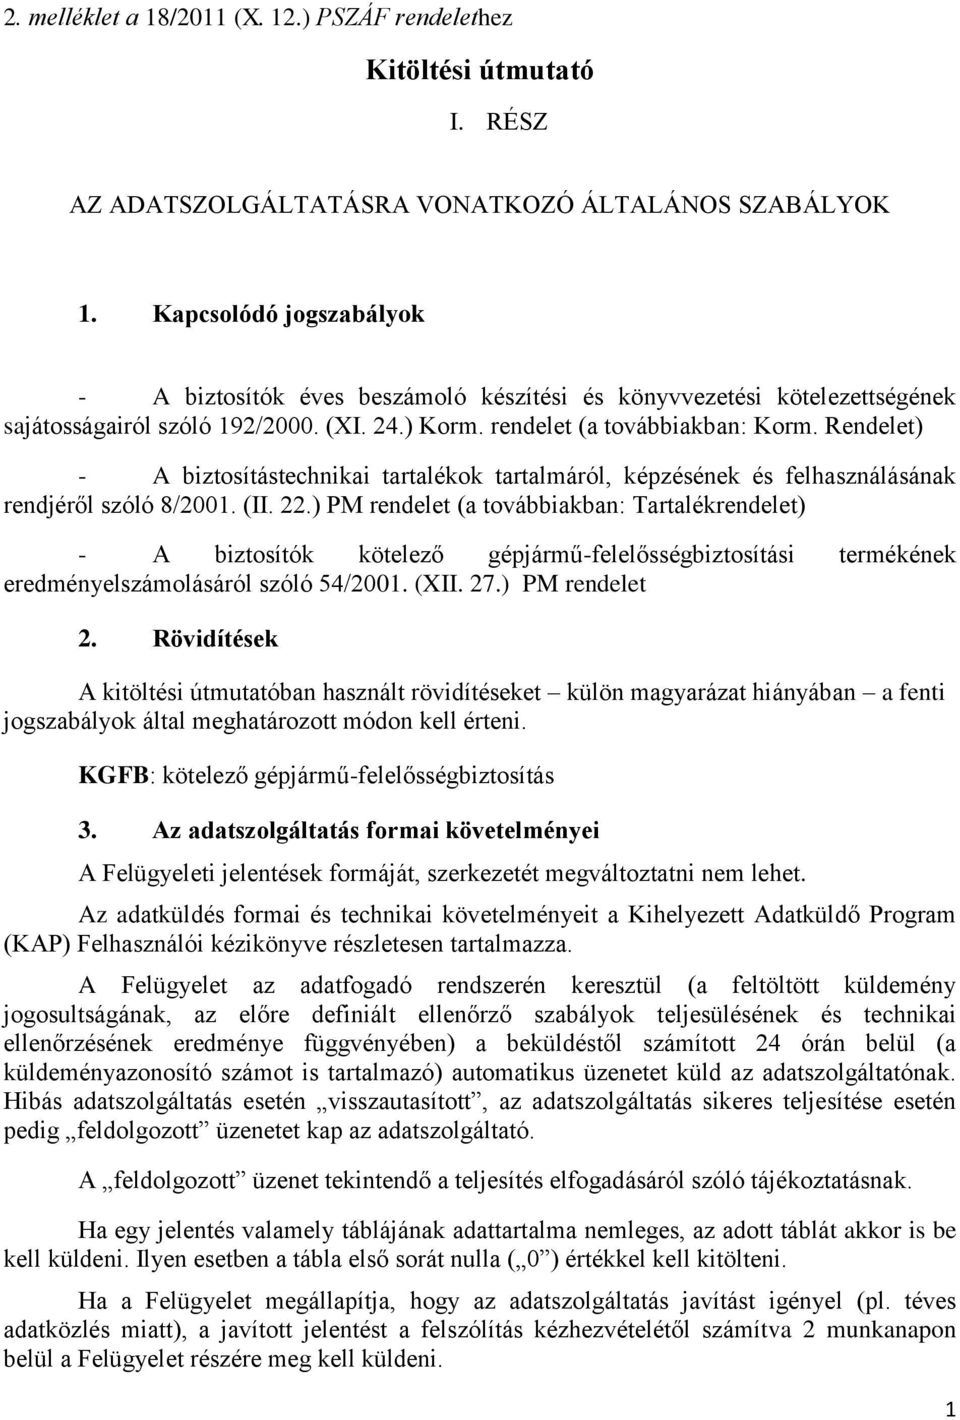 Rendelet) - A biztosítástechnikai tartalékok tartalmáról, képzésének és felhasználásának rendjéről szóló 8/2001. (II. 22.